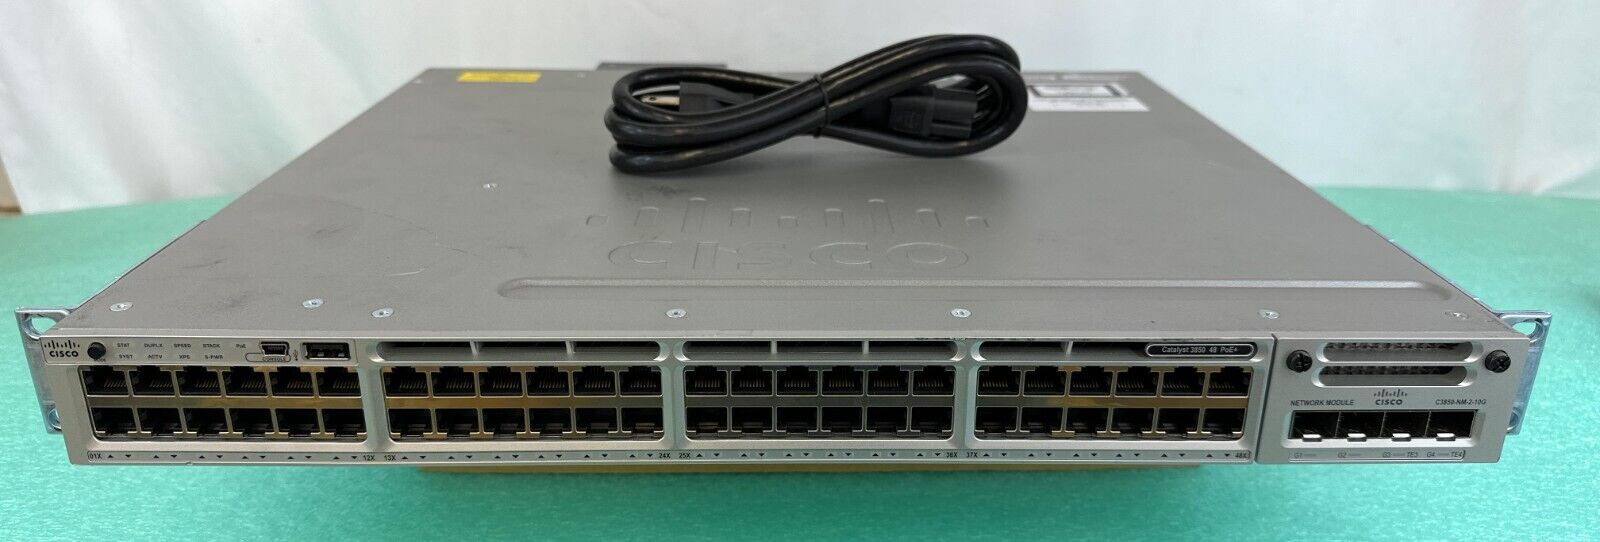 Cisco Catalyst WS-C3850-48PW-SZ 48 Port PoE Gigabit Switch w/ C3850-NM-2-10G